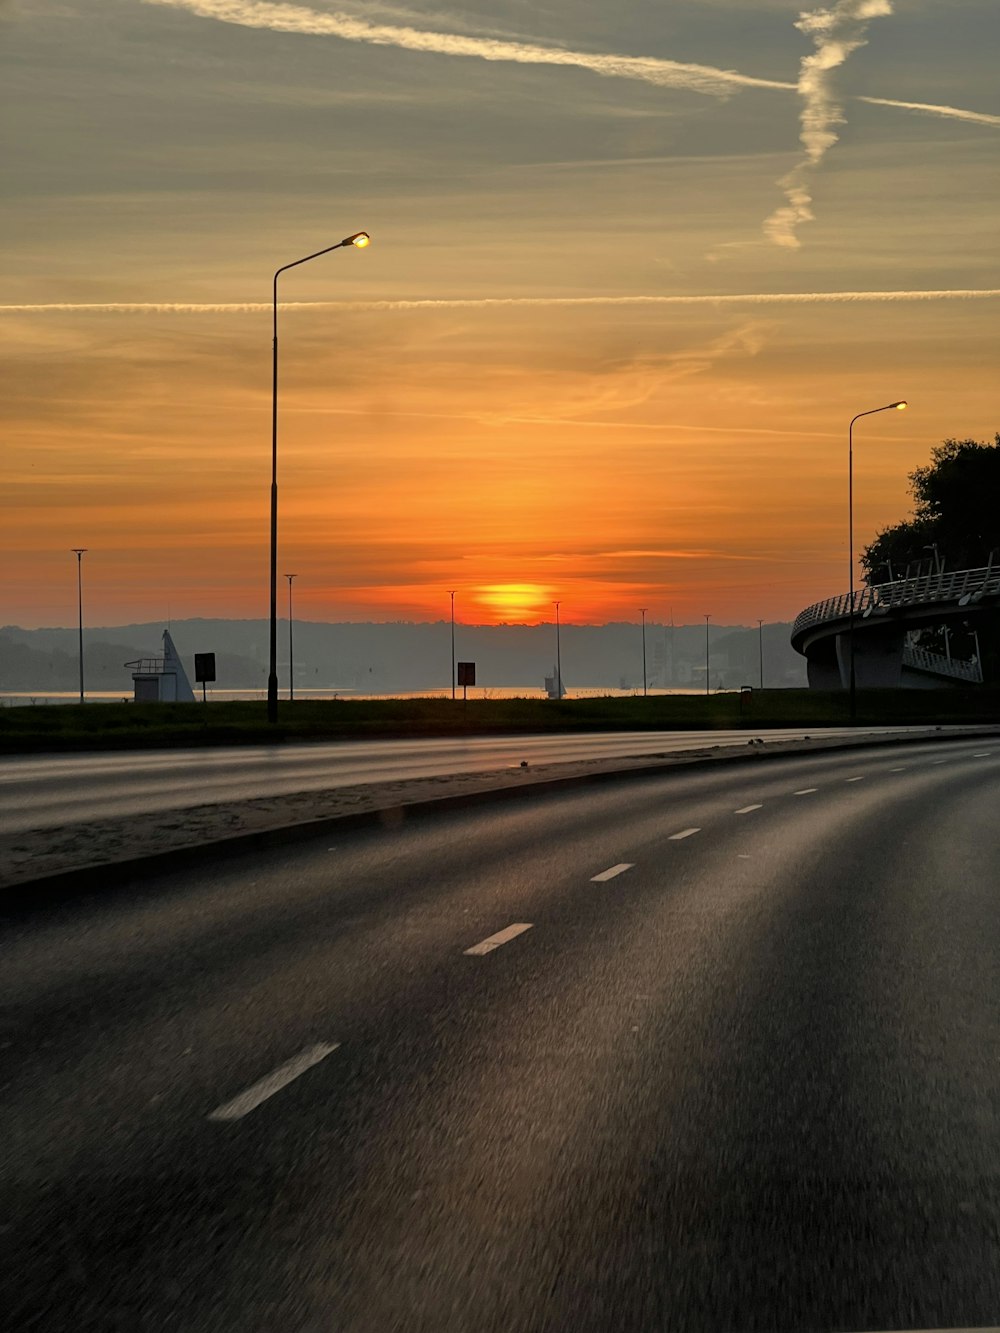 Le soleil se couche à l’horizon d’une autoroute